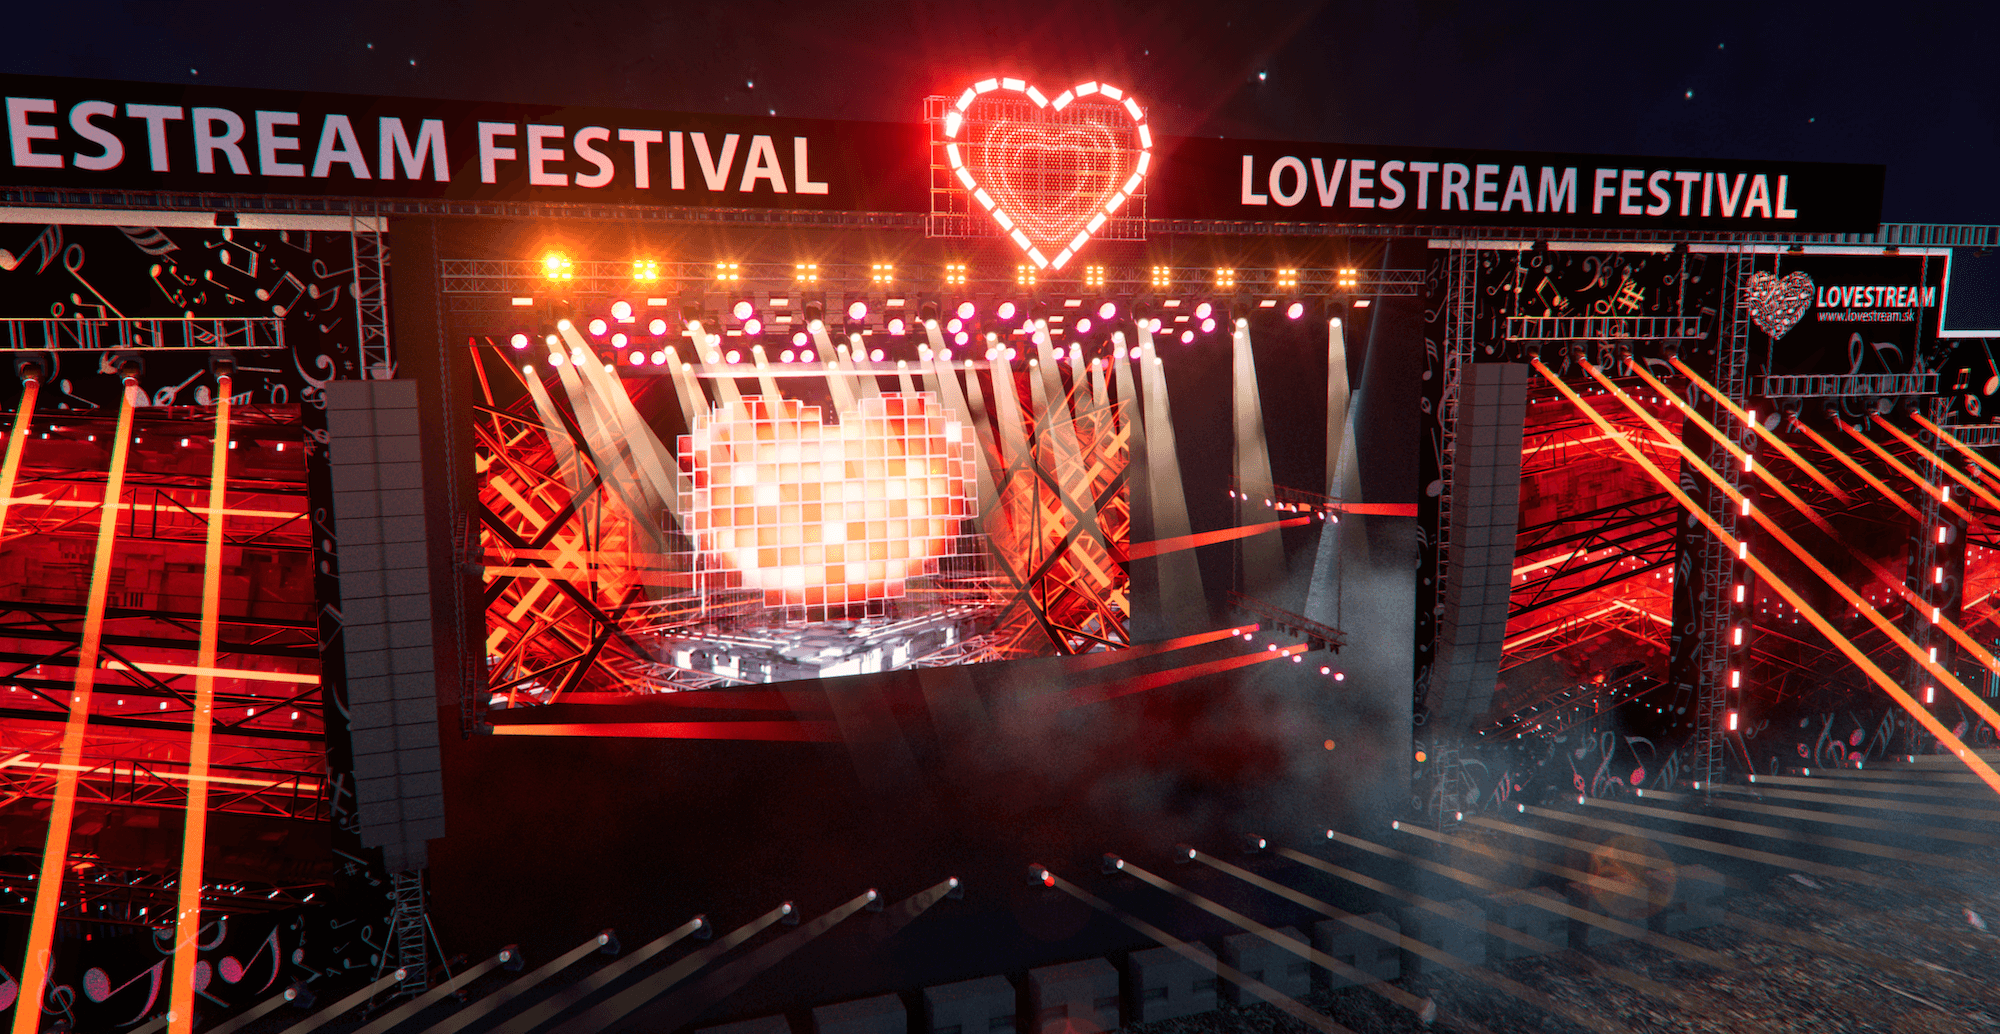 Lovestream festival